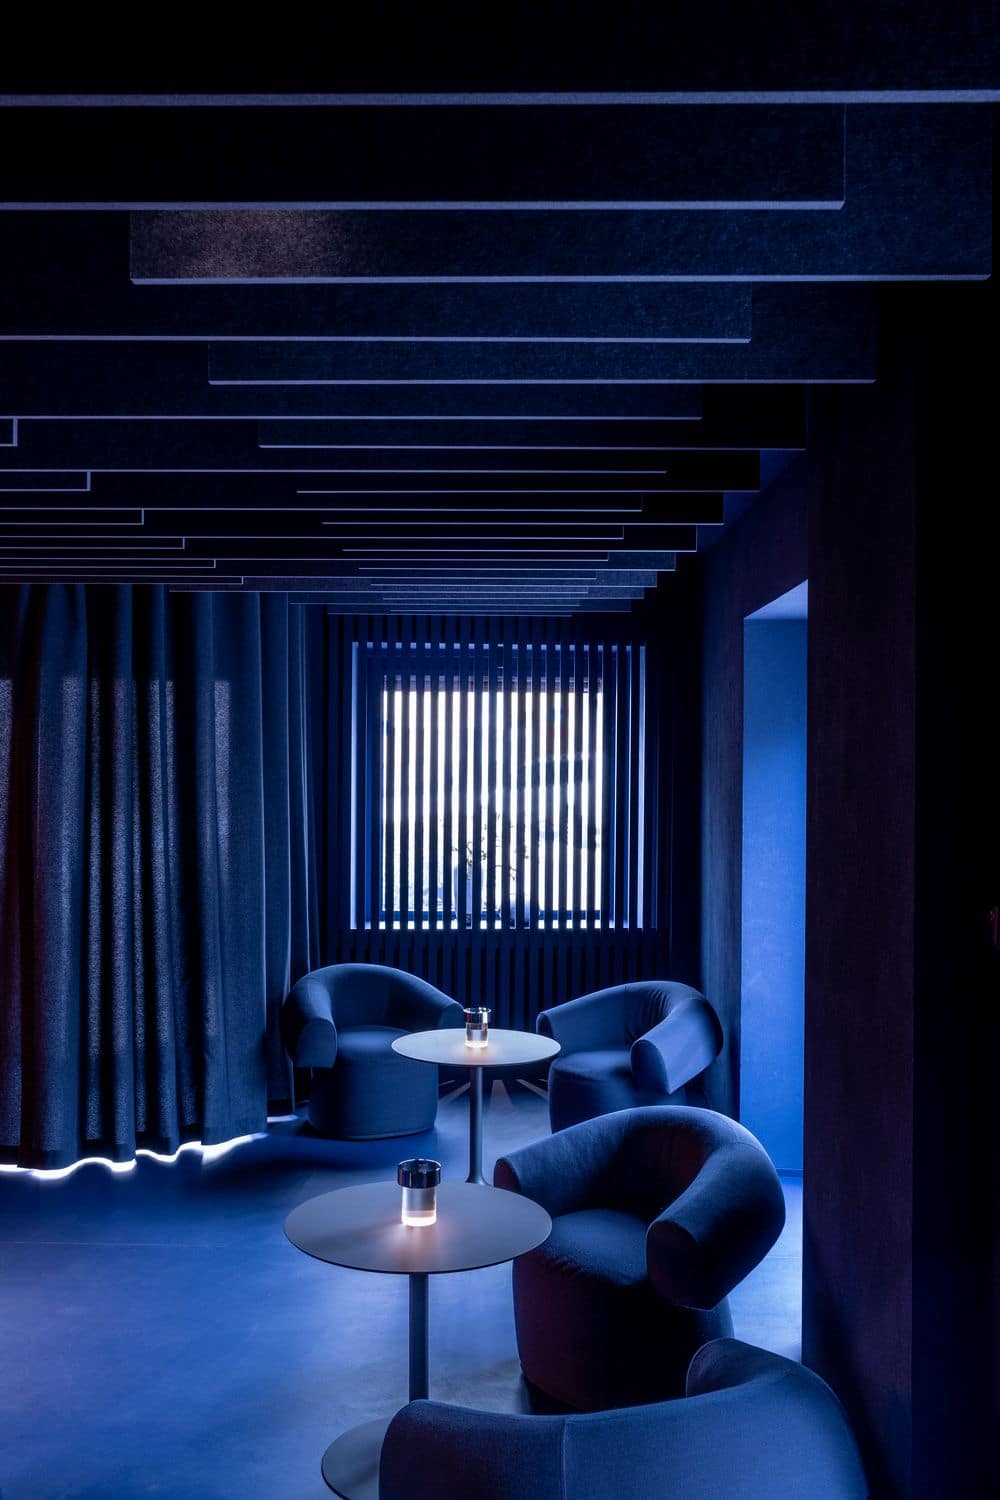 The "Blue Lounge" of the 2 Michelin Stars Restaurant Agli Amici 1887